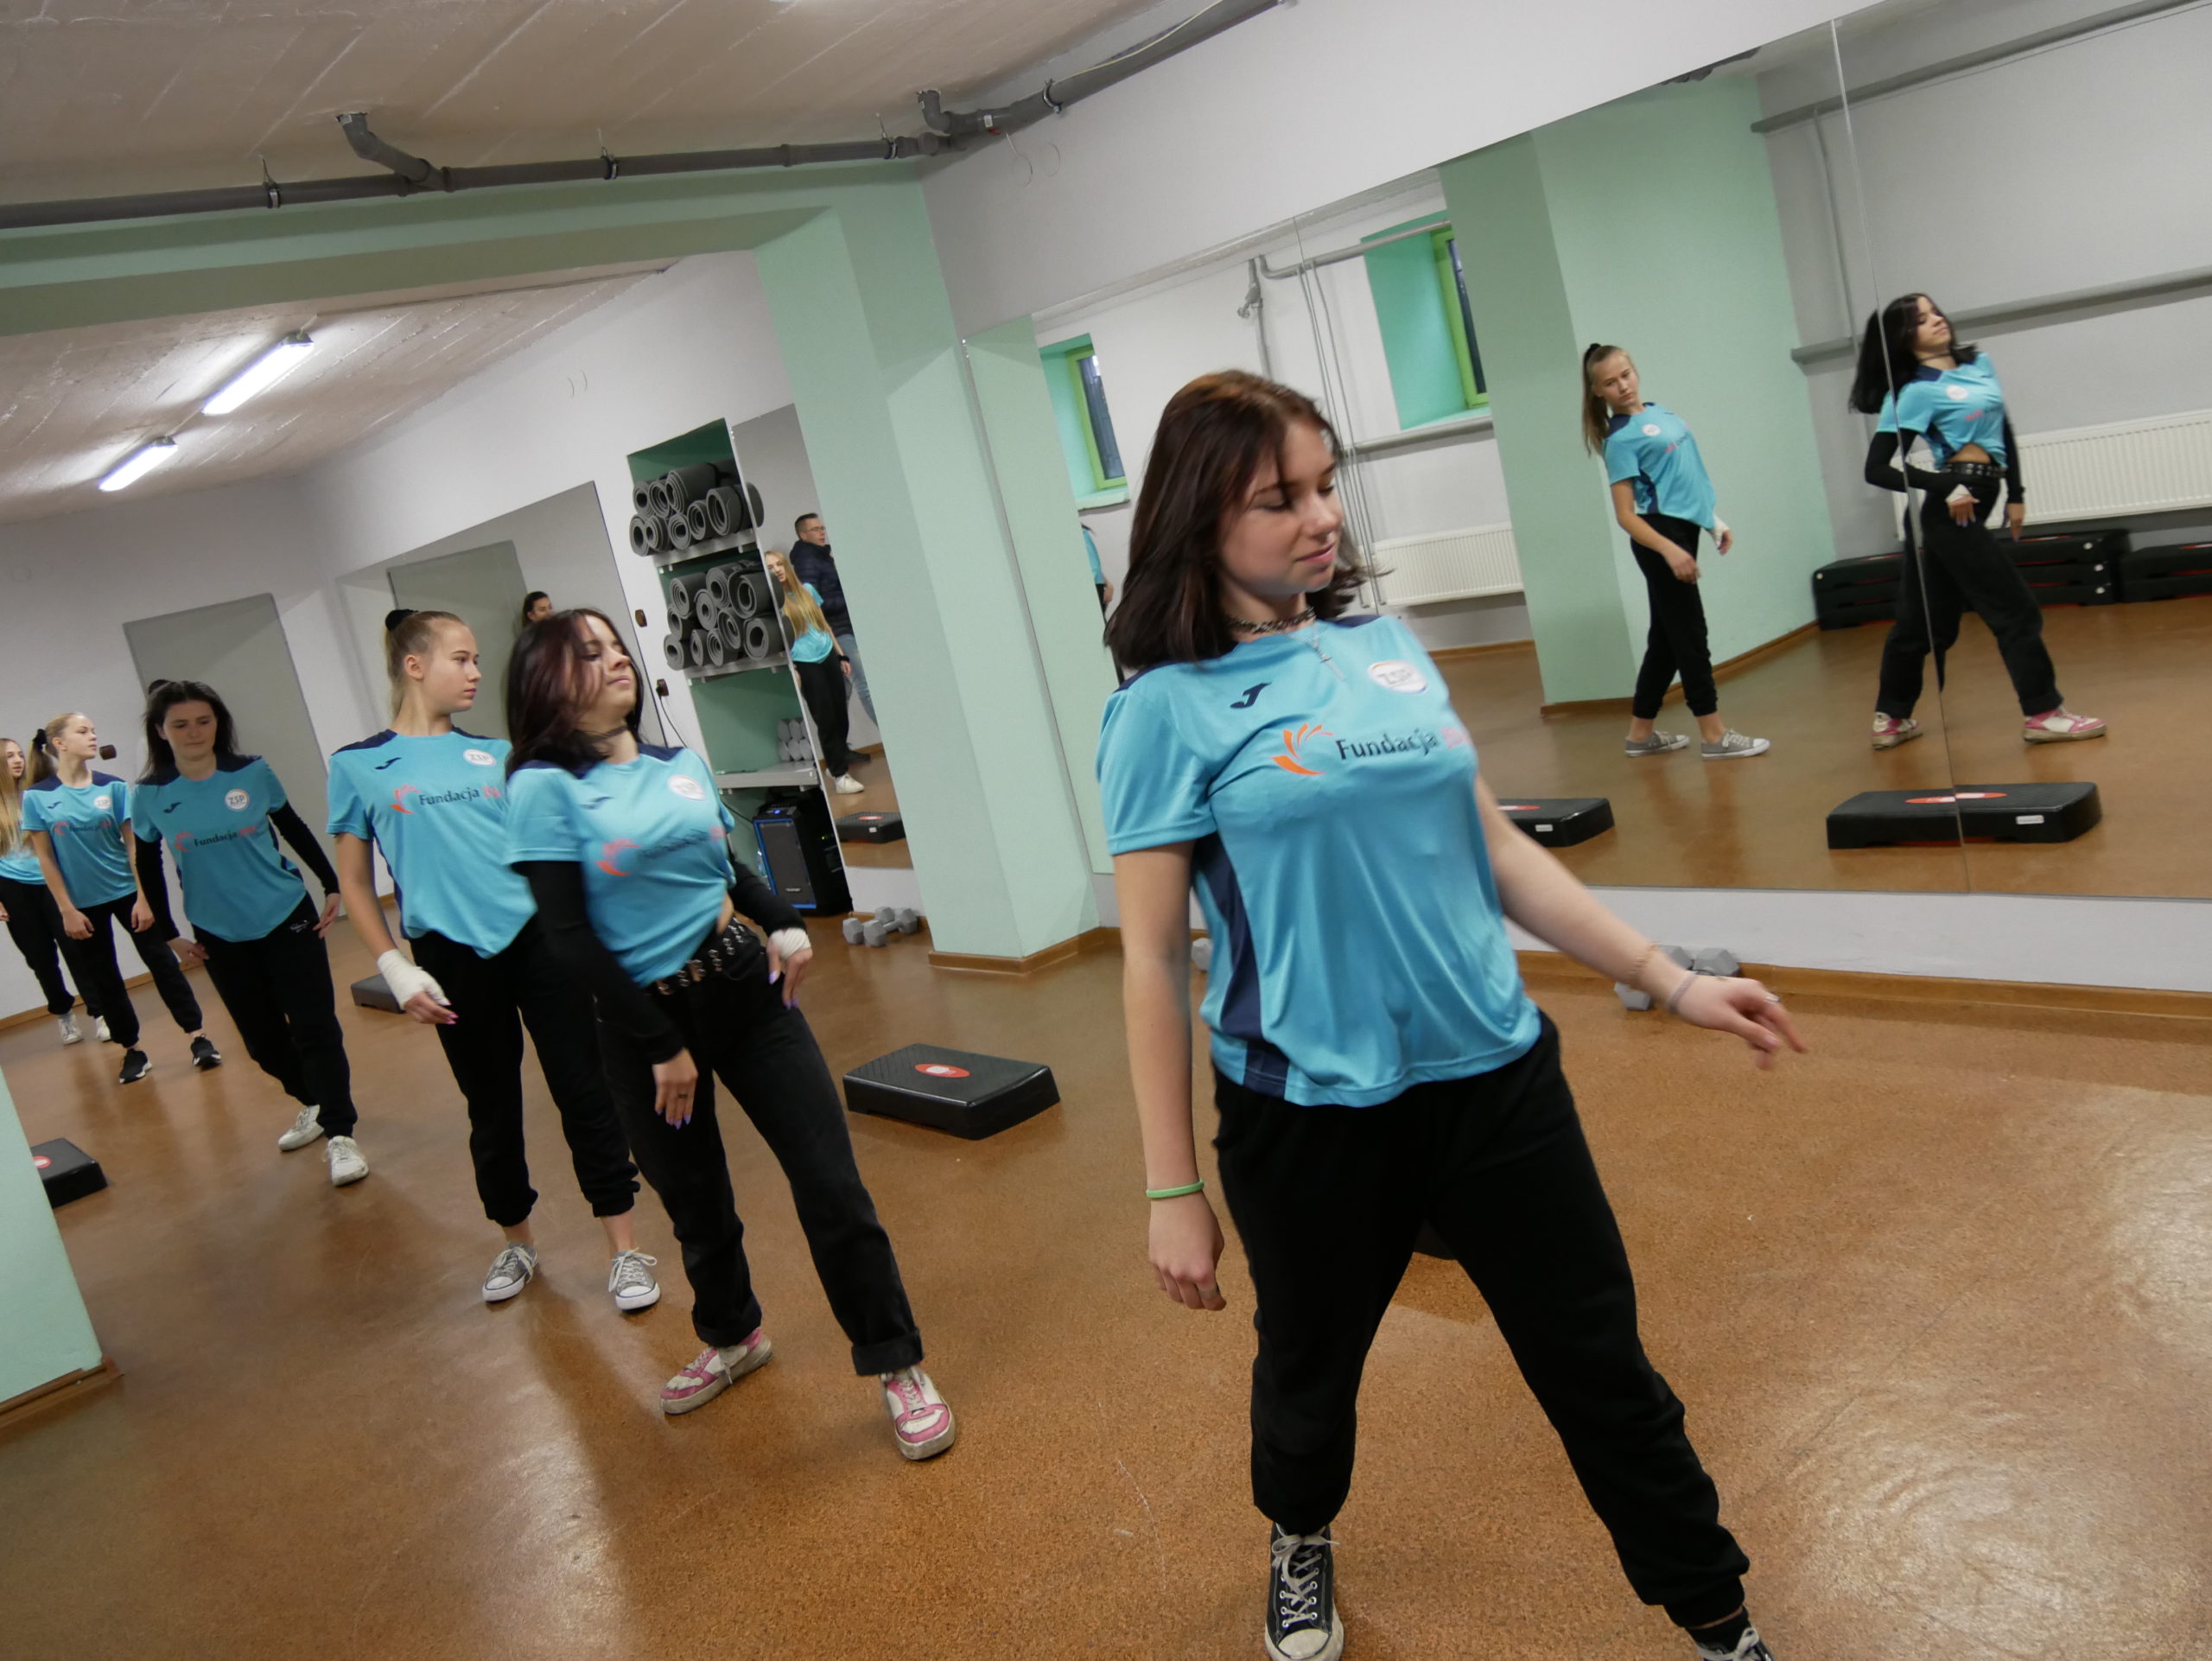 Uczennice demonstrują układ choreograficzny na otwarciu salki fitness